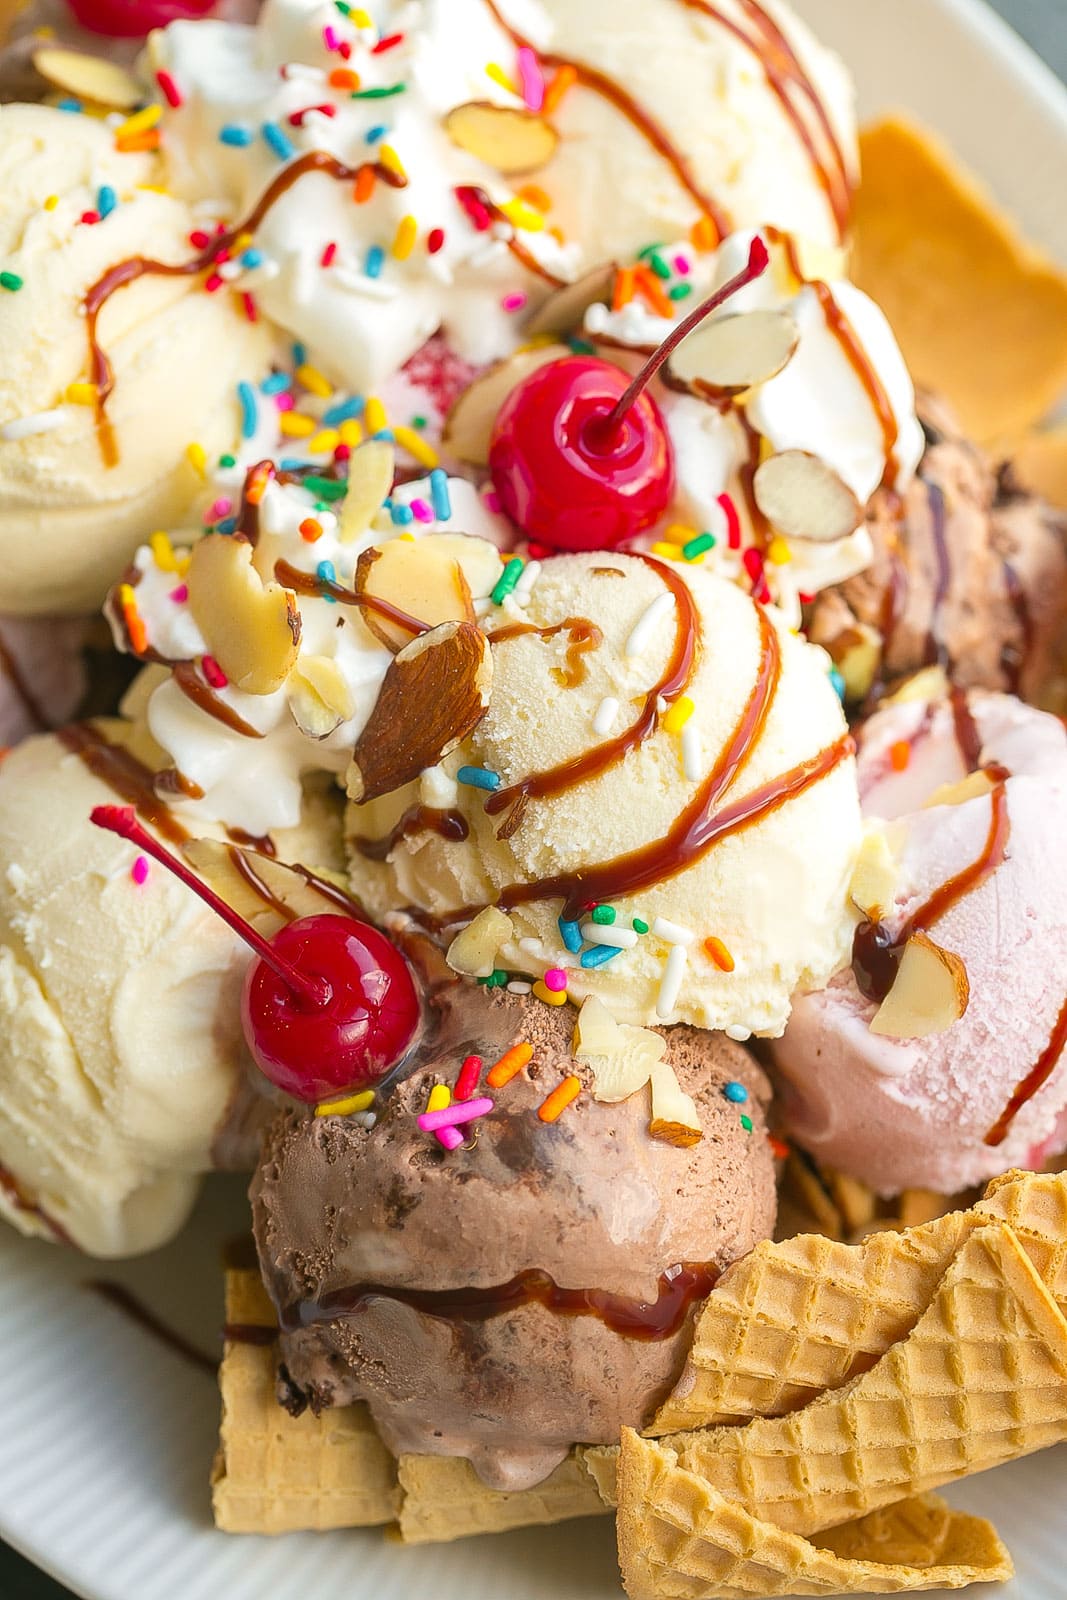 Ice cream desert with cherry on top.